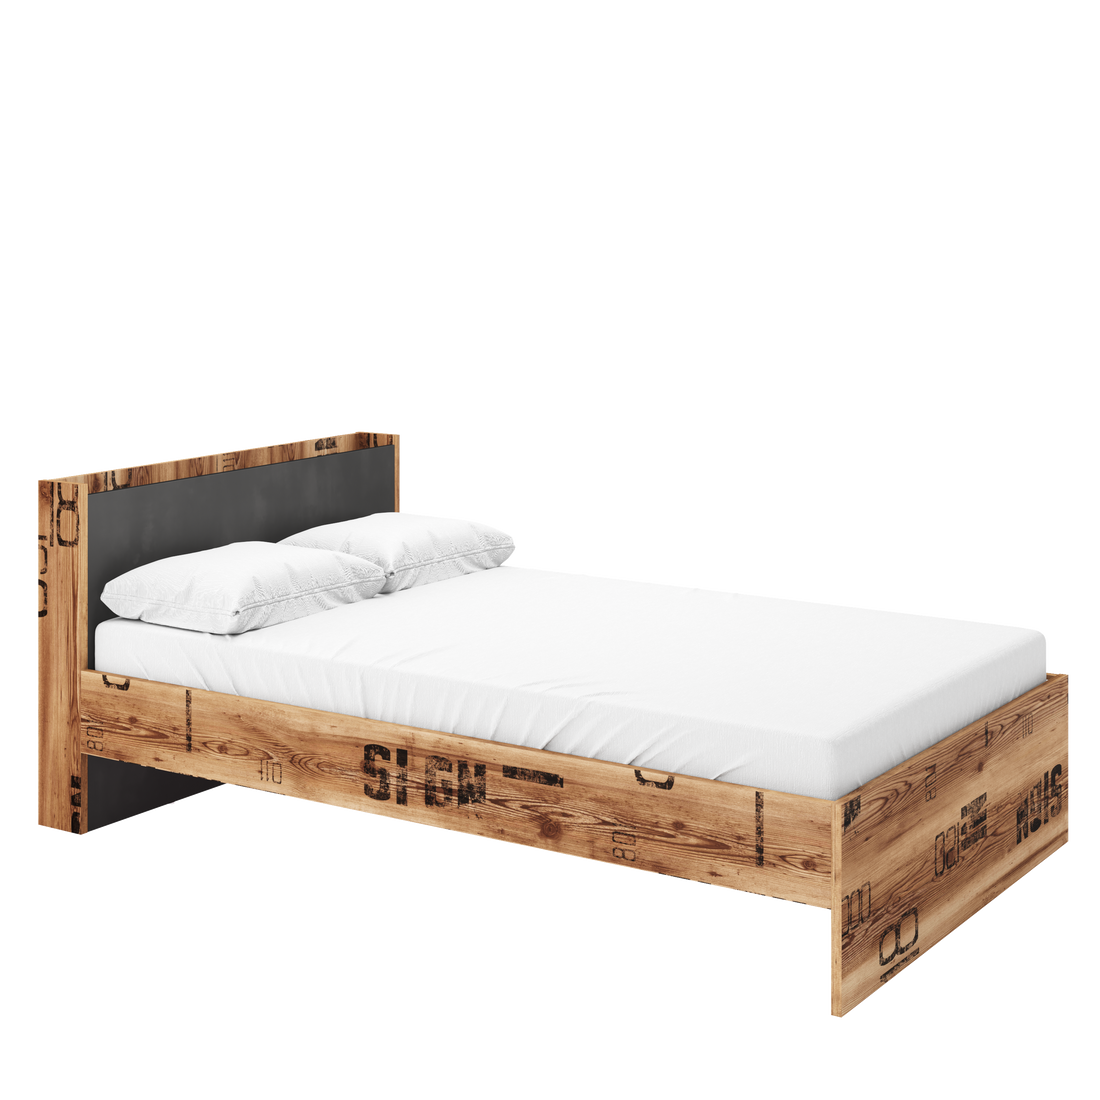 Fargo Bed 15 Width 120cm - £226.8 - Kids Single Bed 